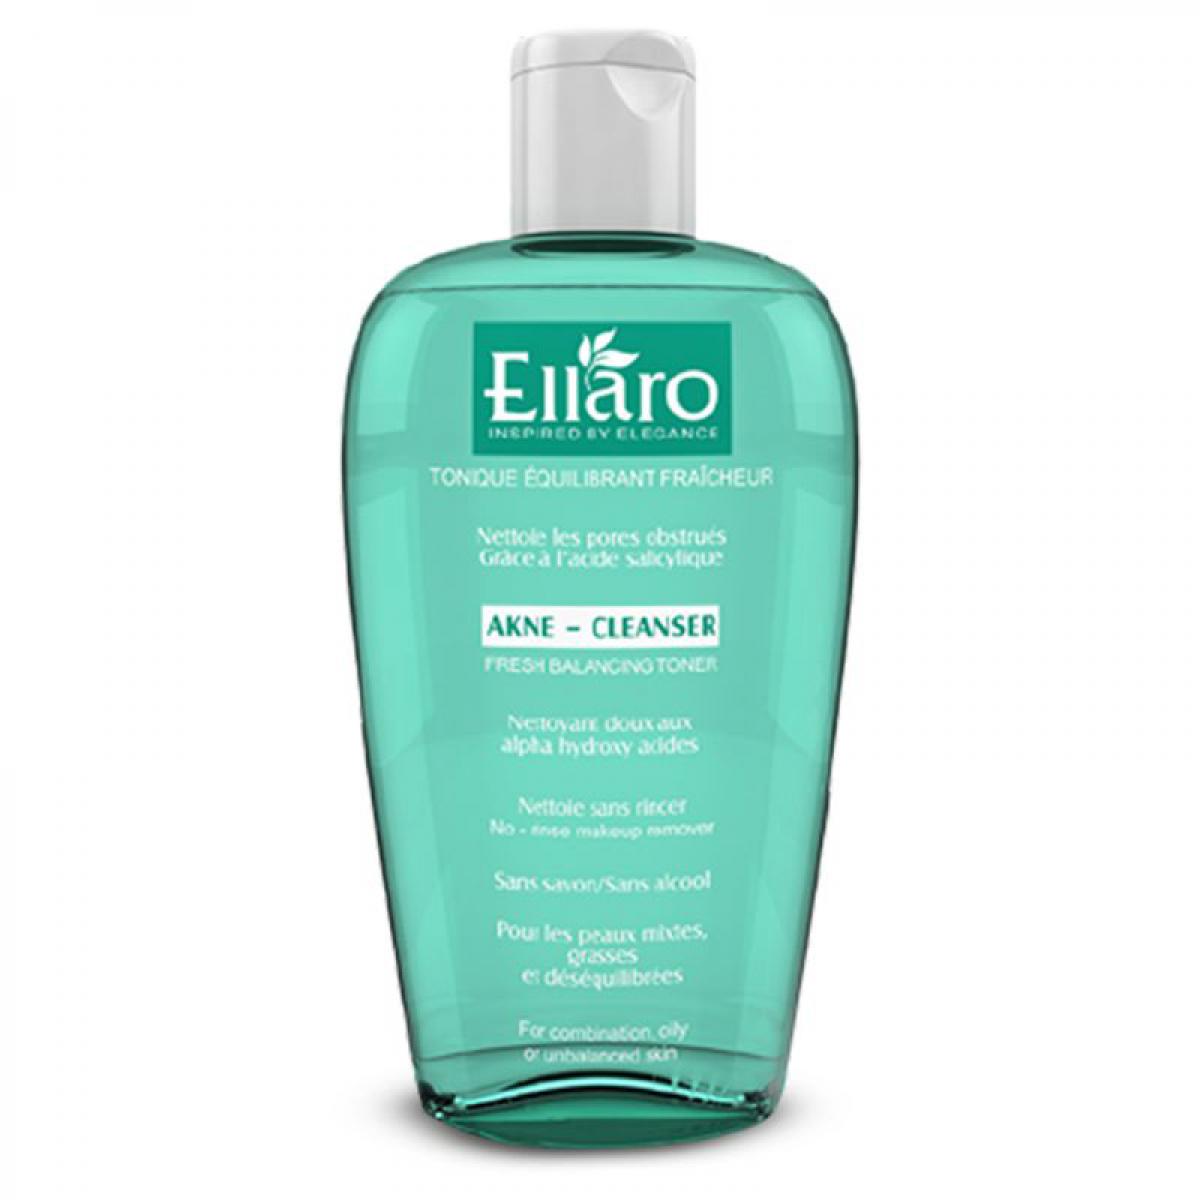 تونر شاداب کننده مناسب پوست چرب و مختلط 200 میل - Ellaro Refreshing Toner For Oily Skin Type 200ml